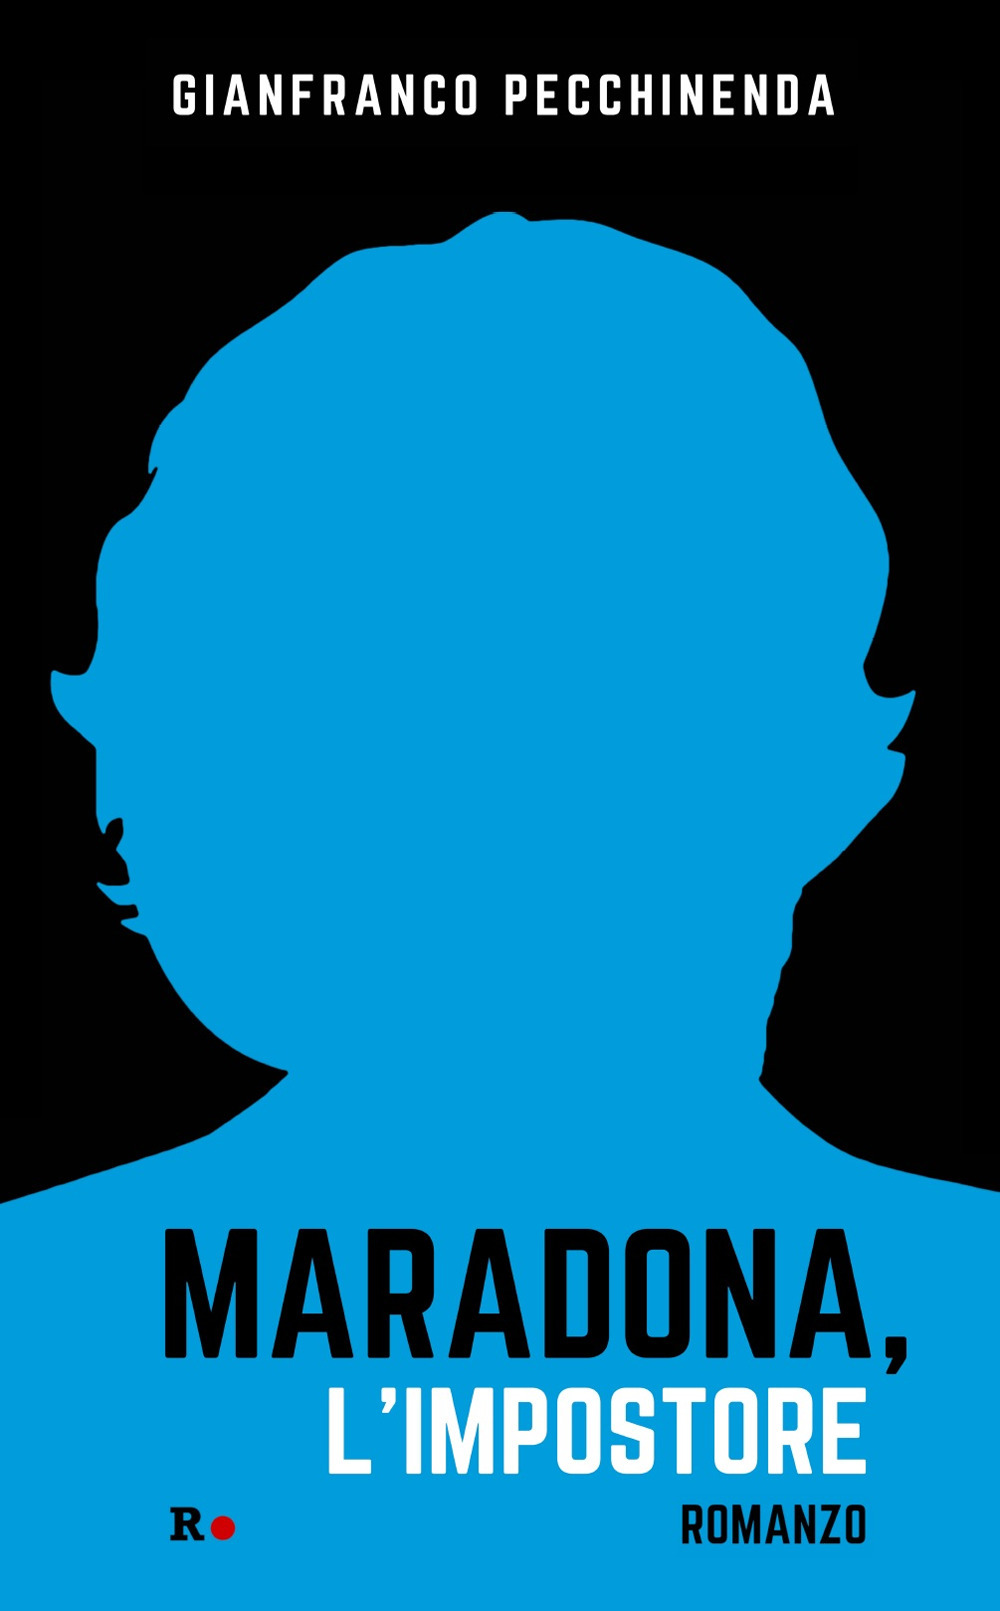 Maradona, l'impostore